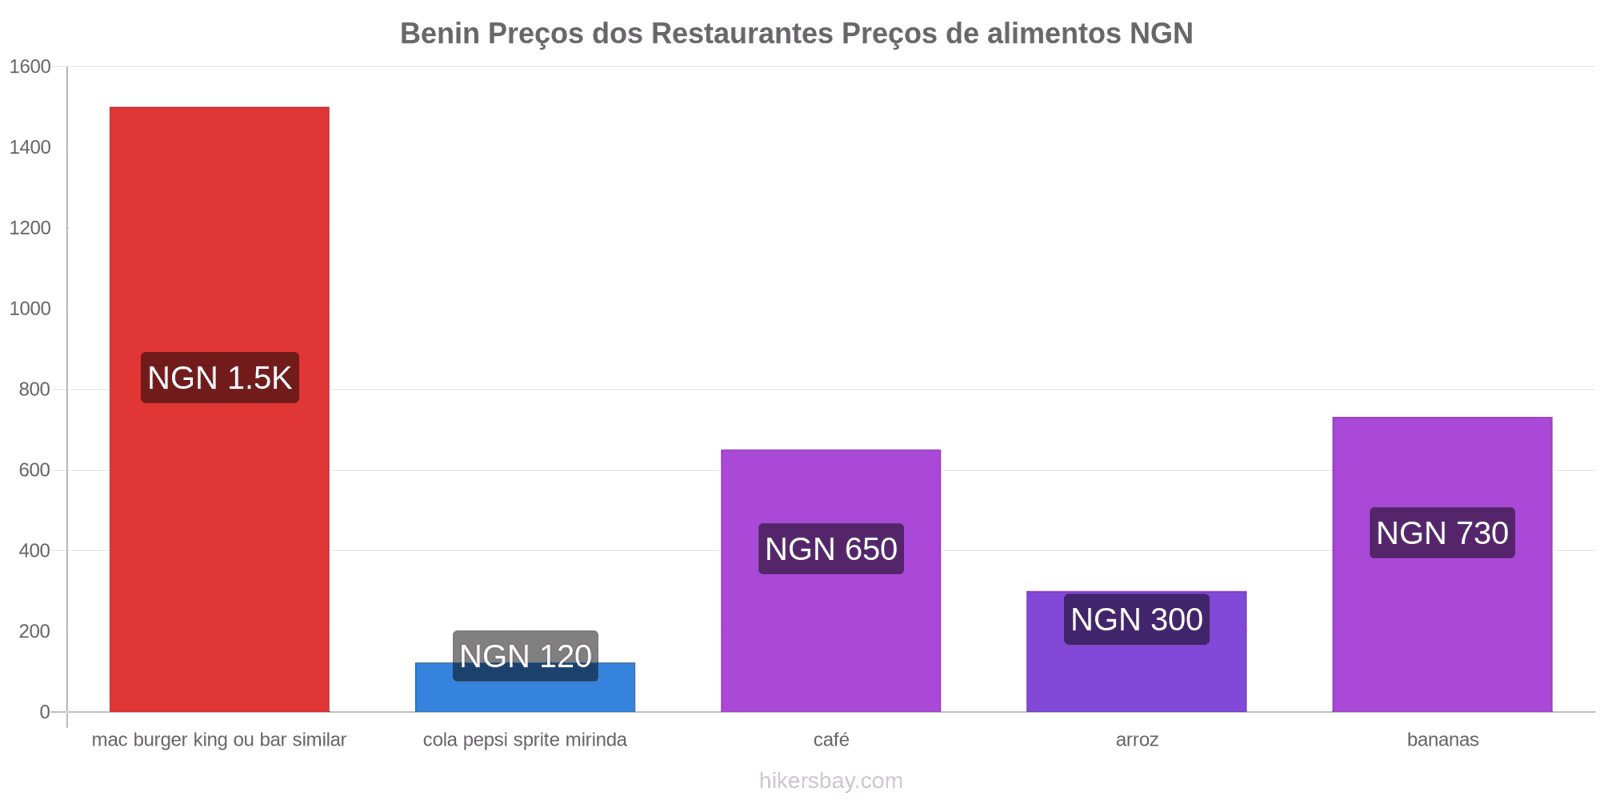 Benin mudanças de preços hikersbay.com